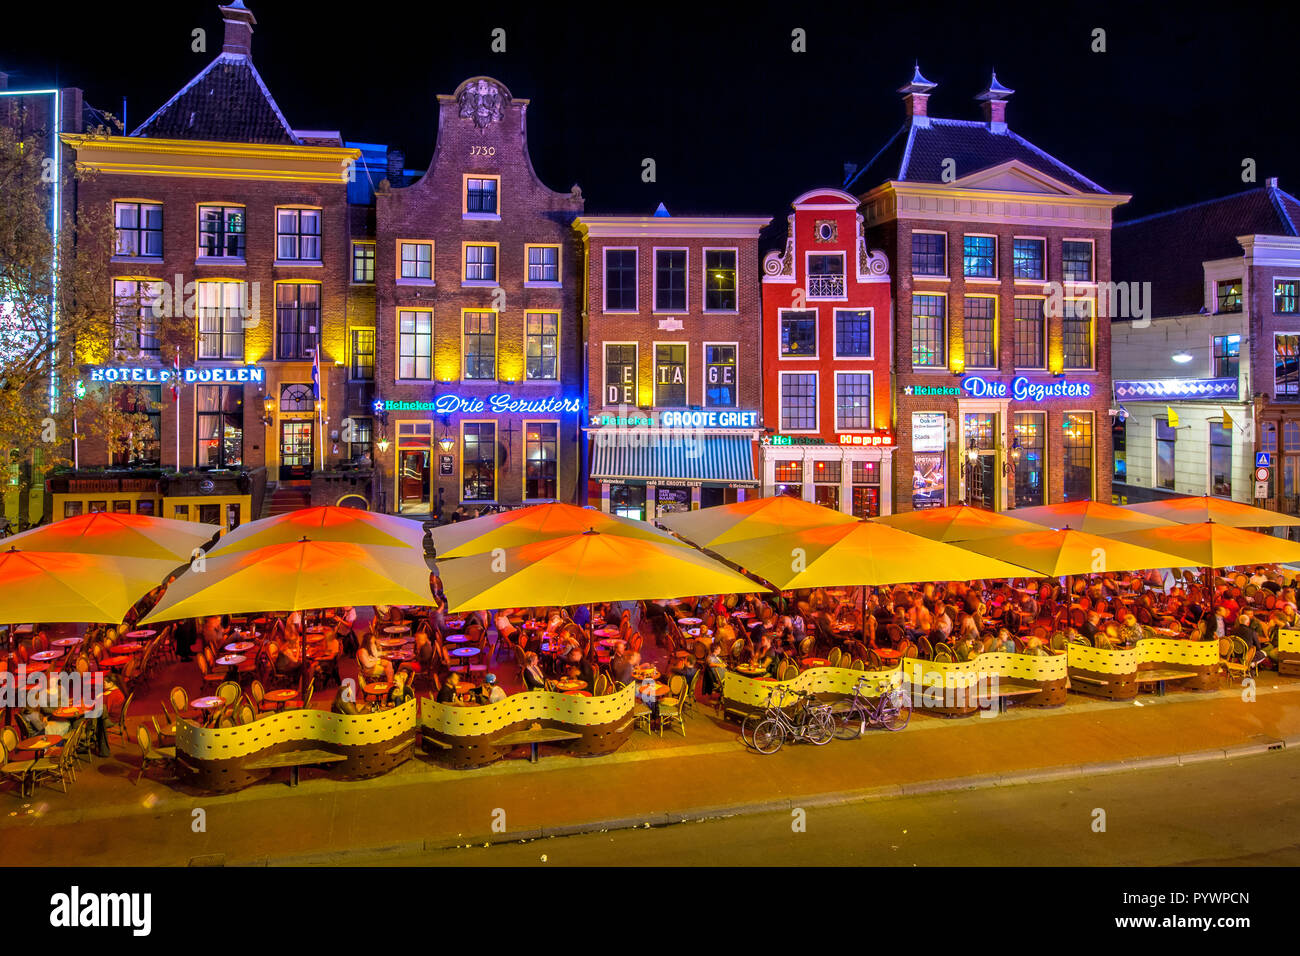 GRONINGEN, Pays-bas-Mai 5,2015 : les élèves sur teracces dans la nuit. Célèbres bars et restaurants dans le vieux centre de la ville universitaire de Gron Banque D'Images